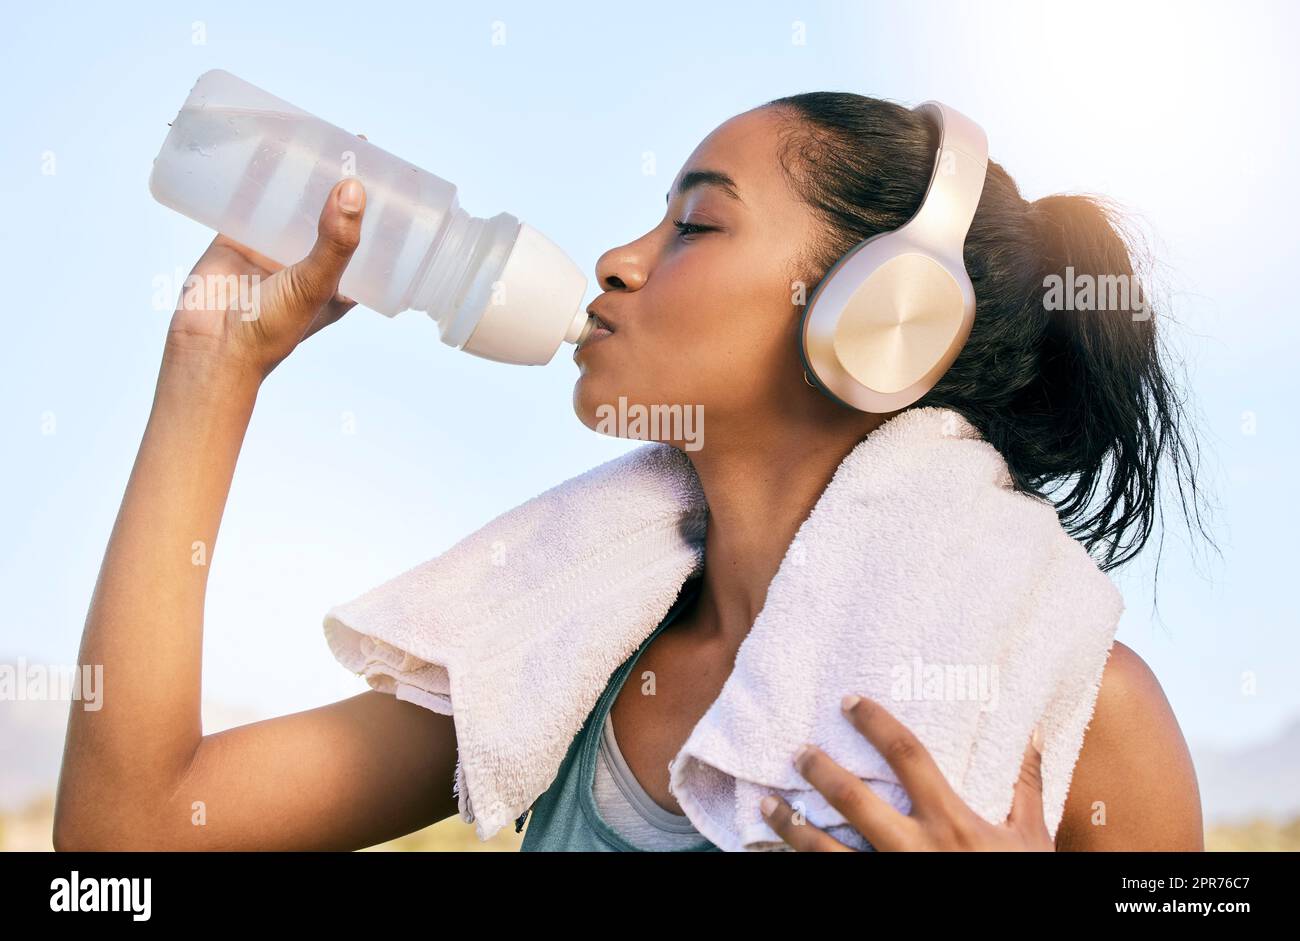 Eine Frau mit aktiver Passform, die nach dem Training im Freien kabellose Kopfhörer trägt und Wasser aus einer Flasche trinkt. Sportlerinnen löschen Durst und kühlen sich nach dem Training im Freien mit einem Handtuch ab Stockfoto